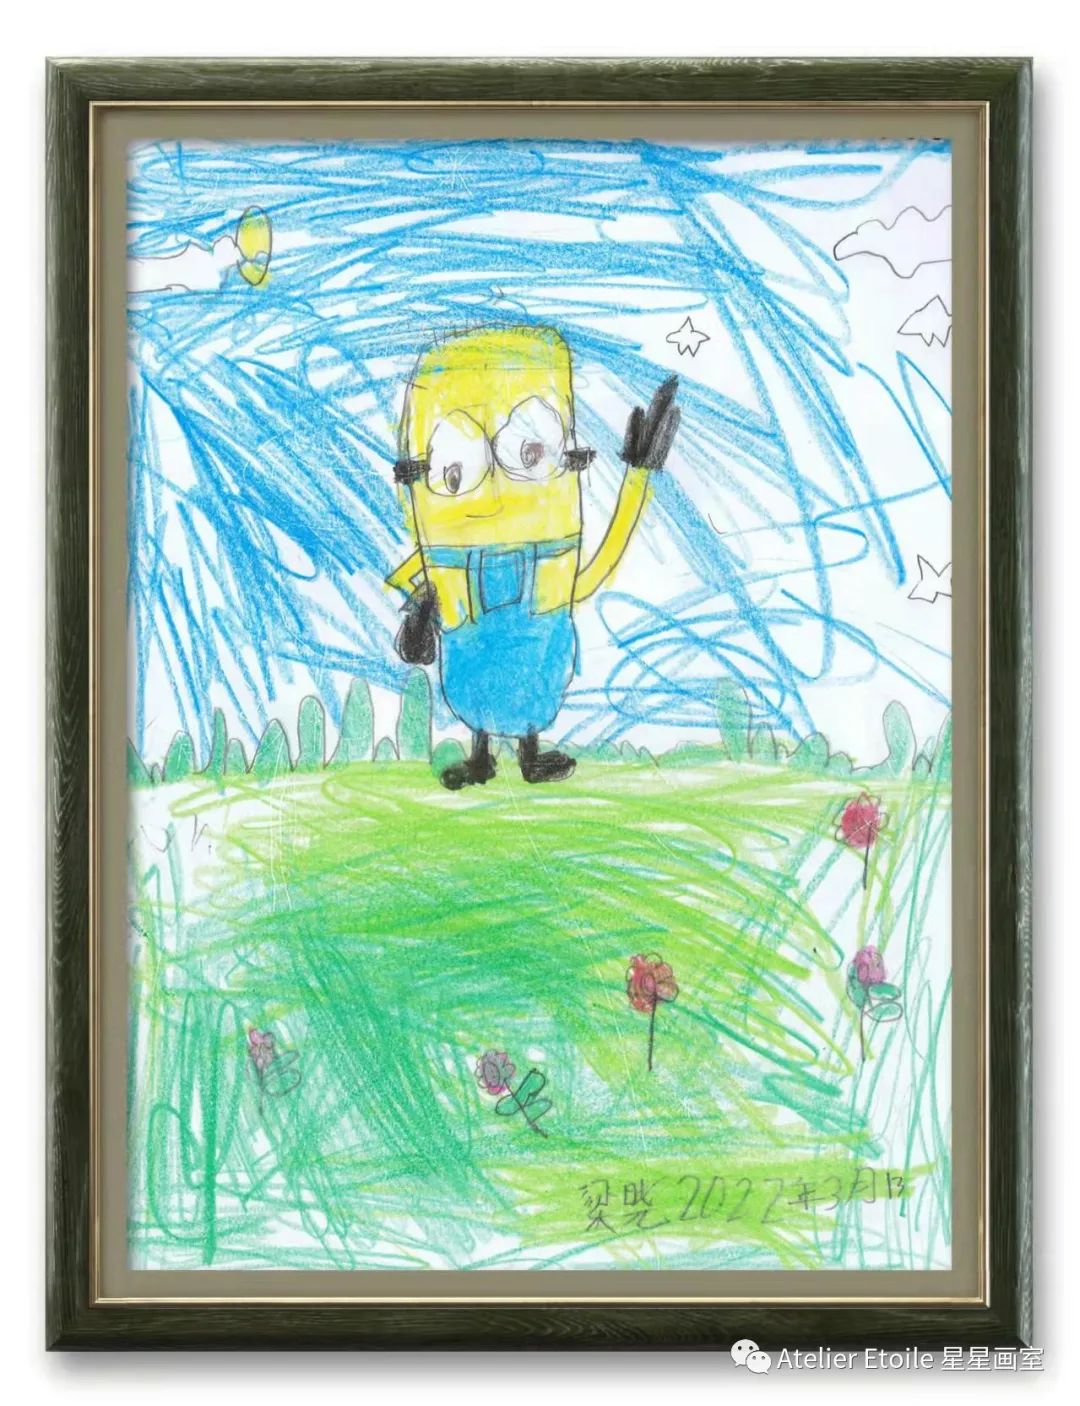 梁晓, 4岁半, 线上儿童绘画启蒙课课堂作品